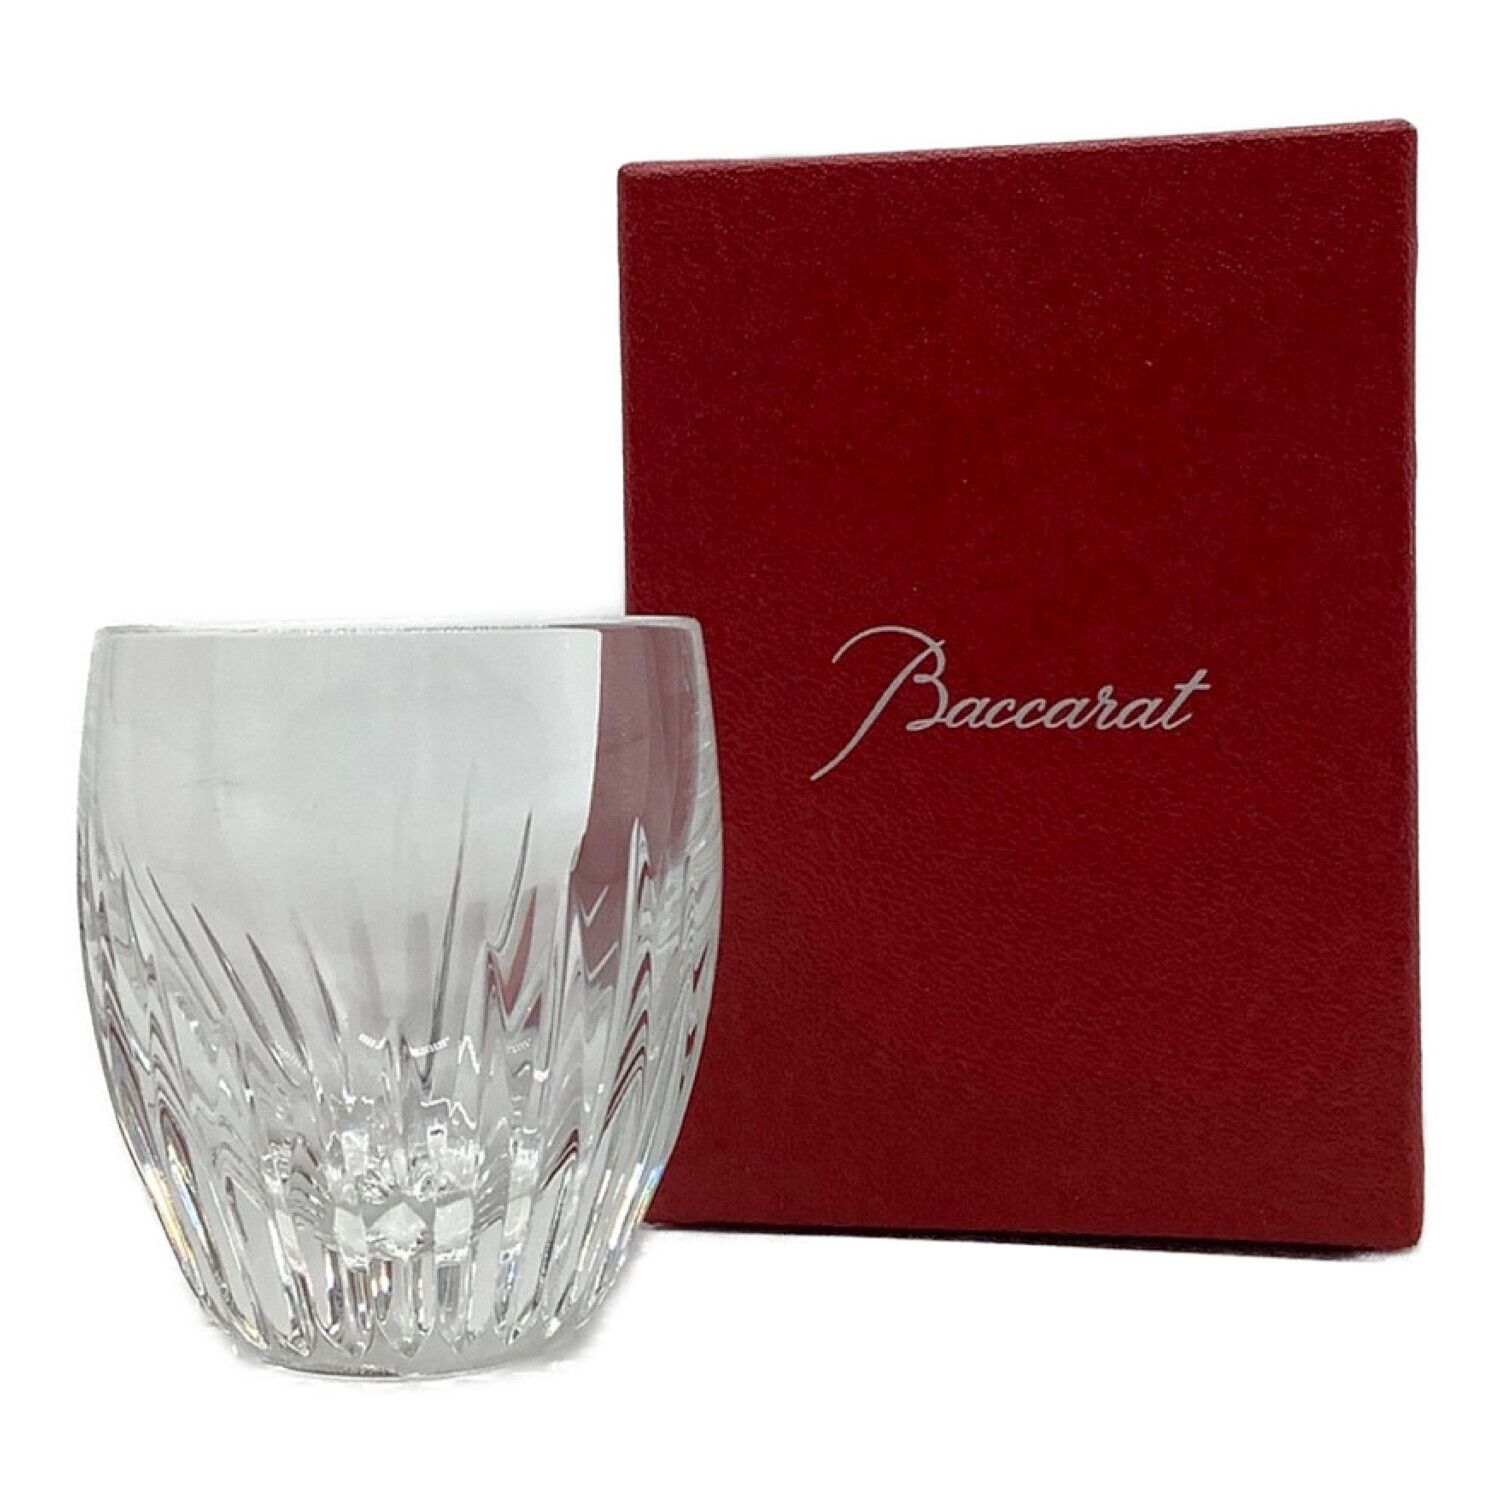 Baccarat baccarat マッセナ ロックグラス ショットグラスご検討いただければと思います